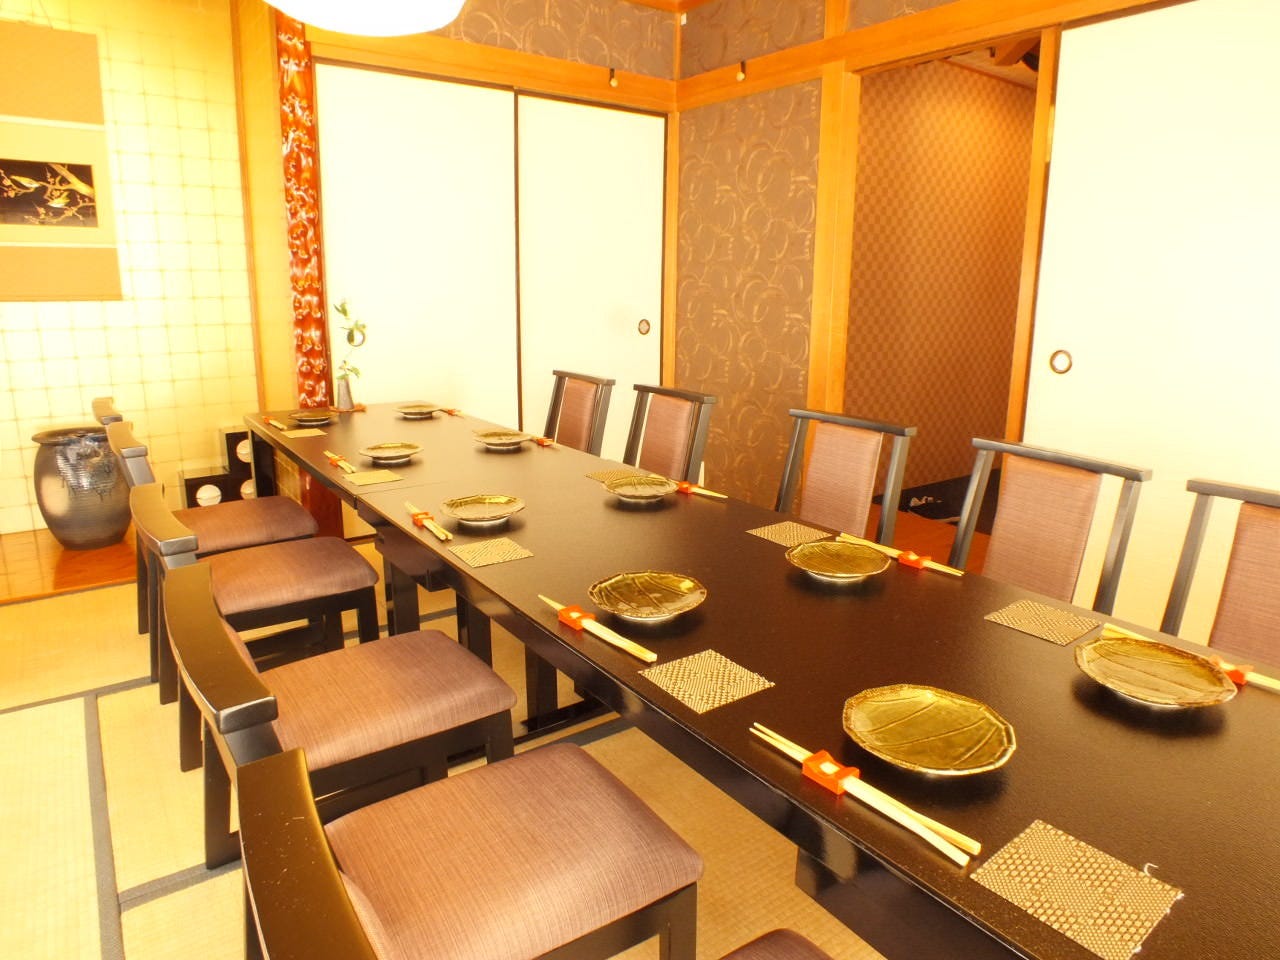 東京都 和食 2人でも個室可 5 000円以上 7 000円未満のグルメ お店情報 サントリーグルメガイド